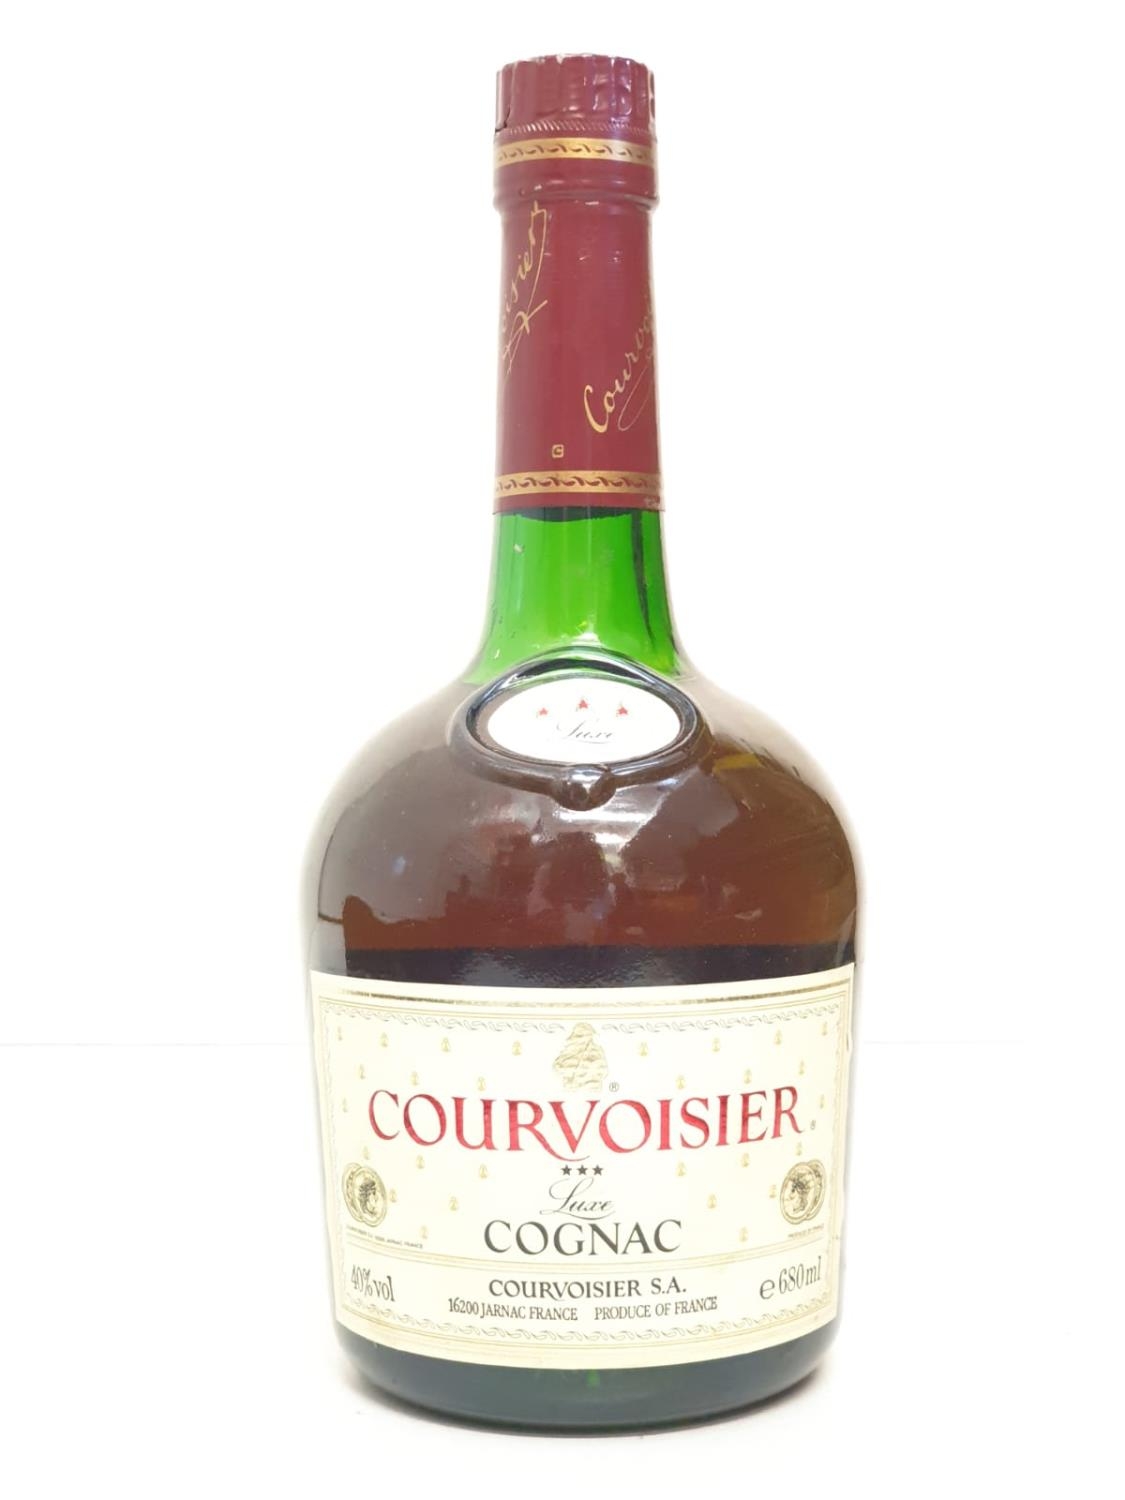 A bottle of vintage Courvoisier cognac.